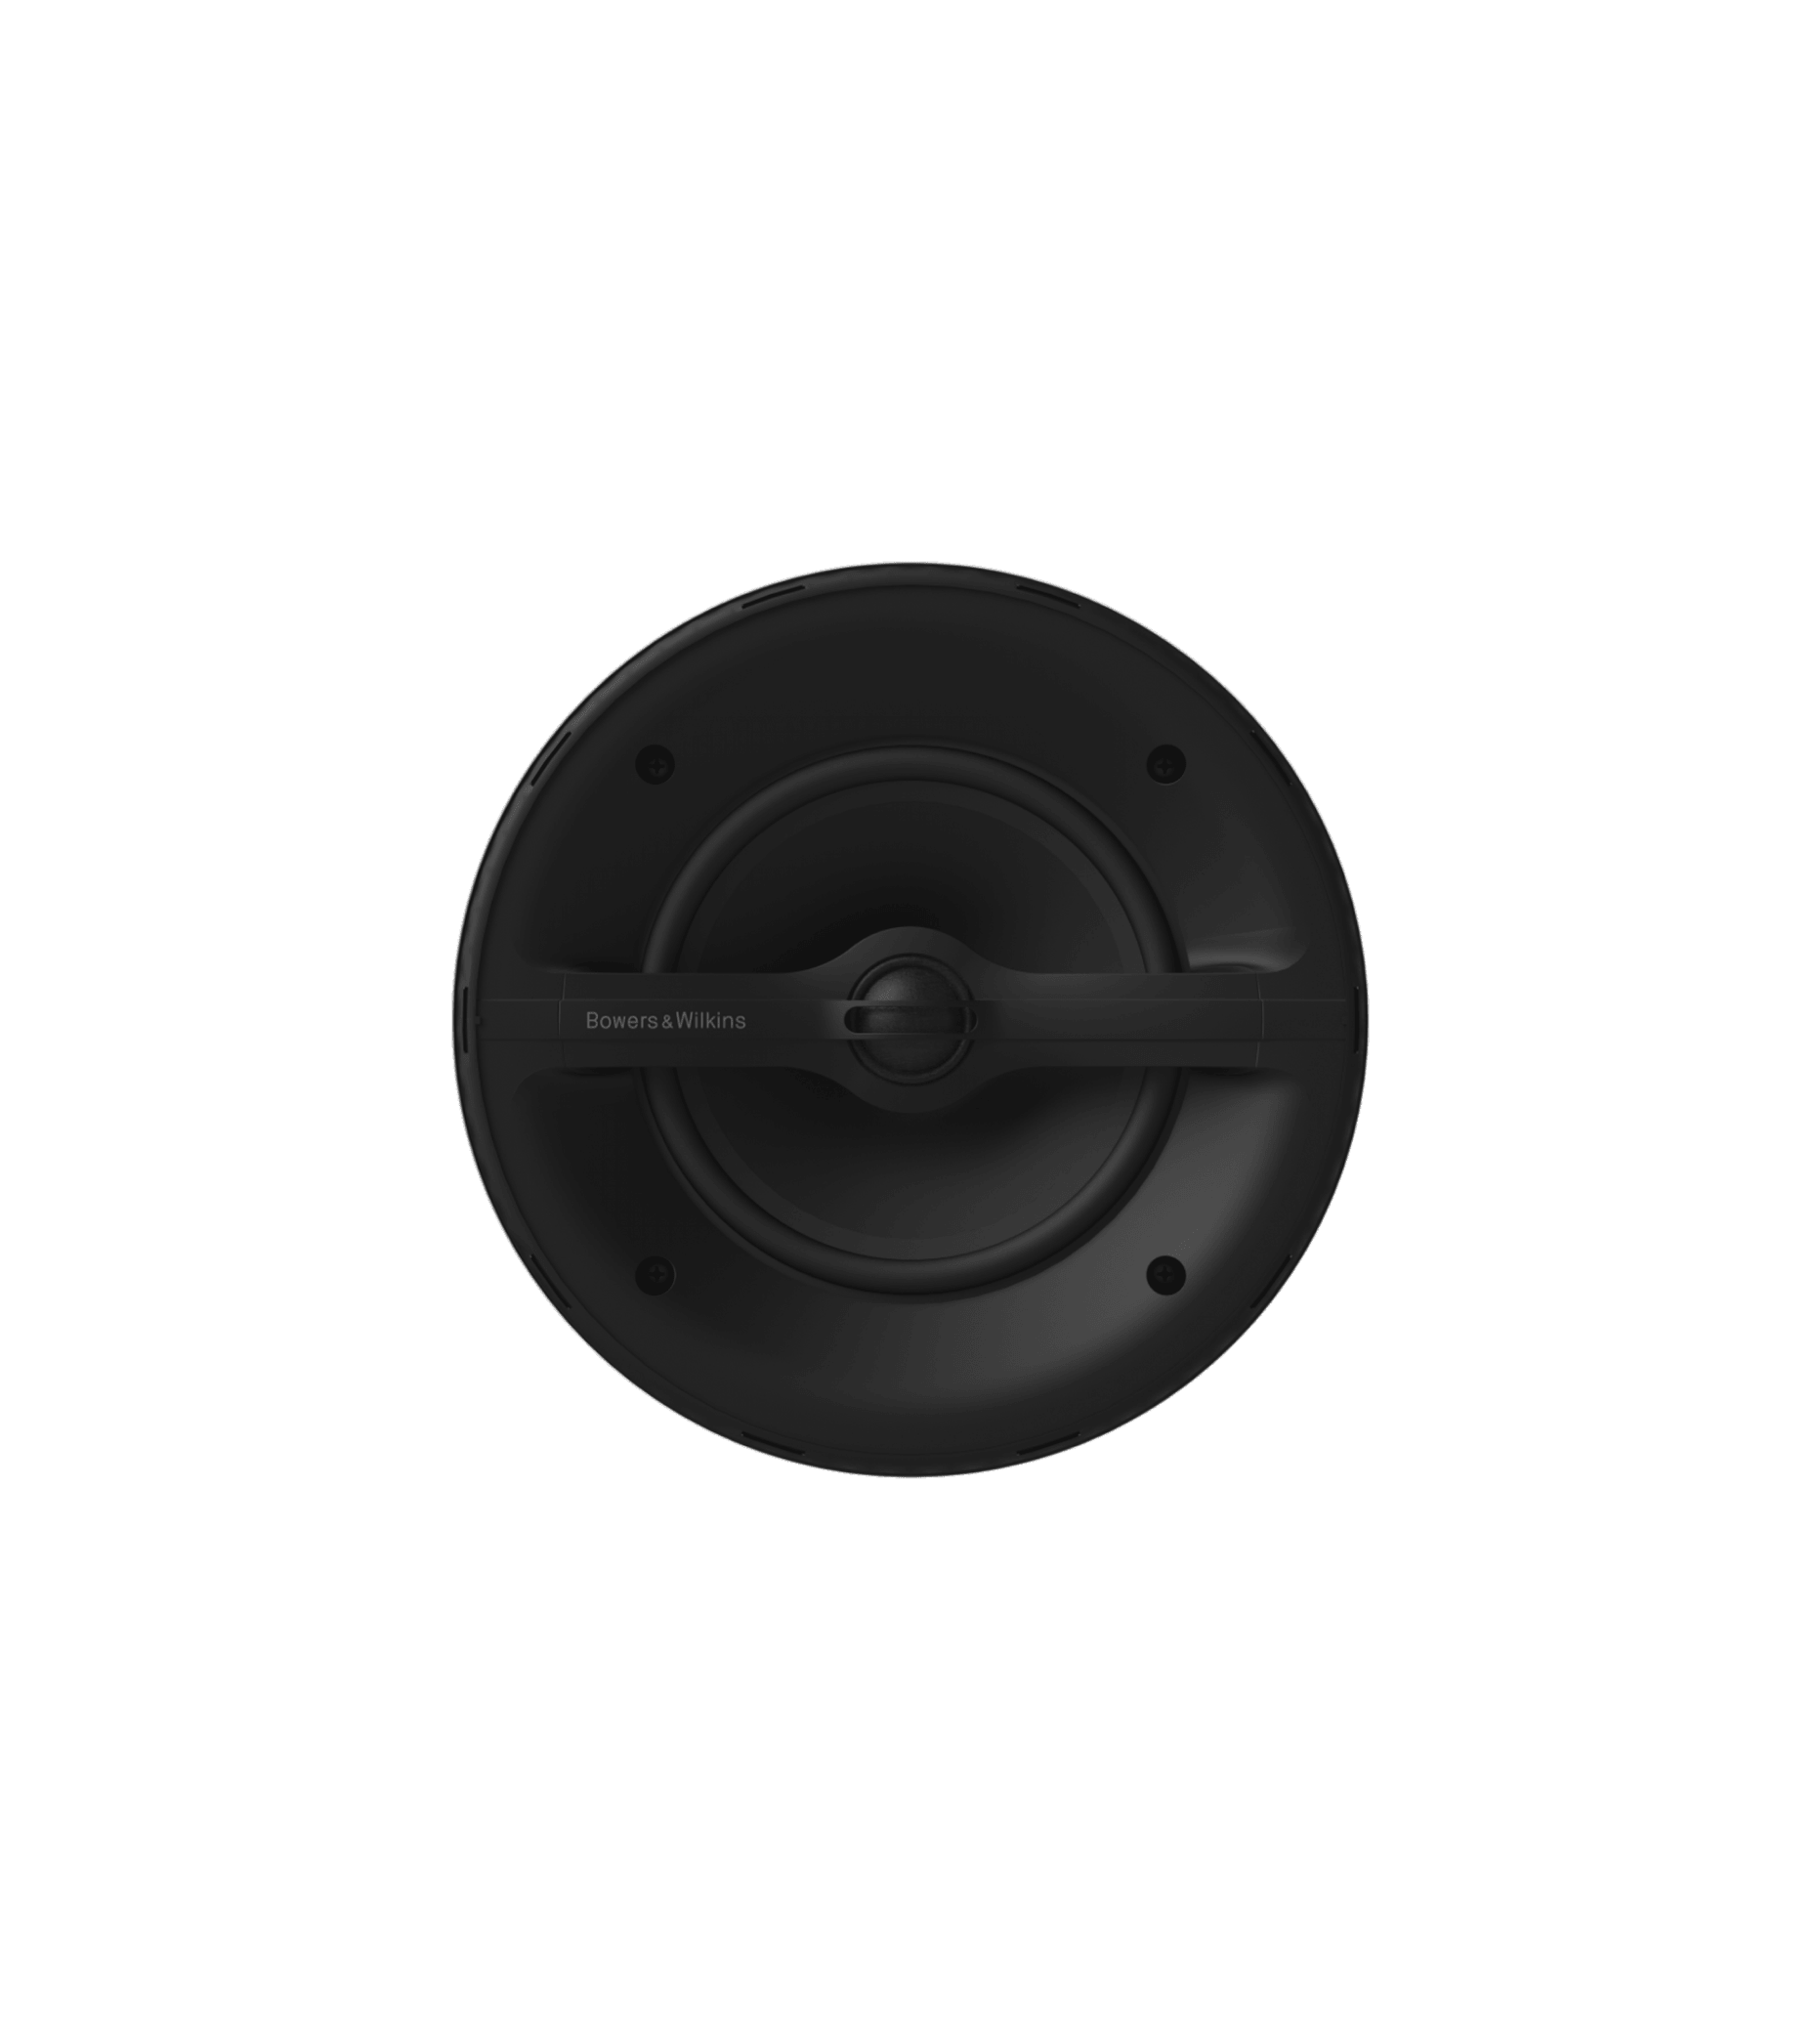 Bowers & Wilkins - Marine 6 - Outdoor Loud Speakers